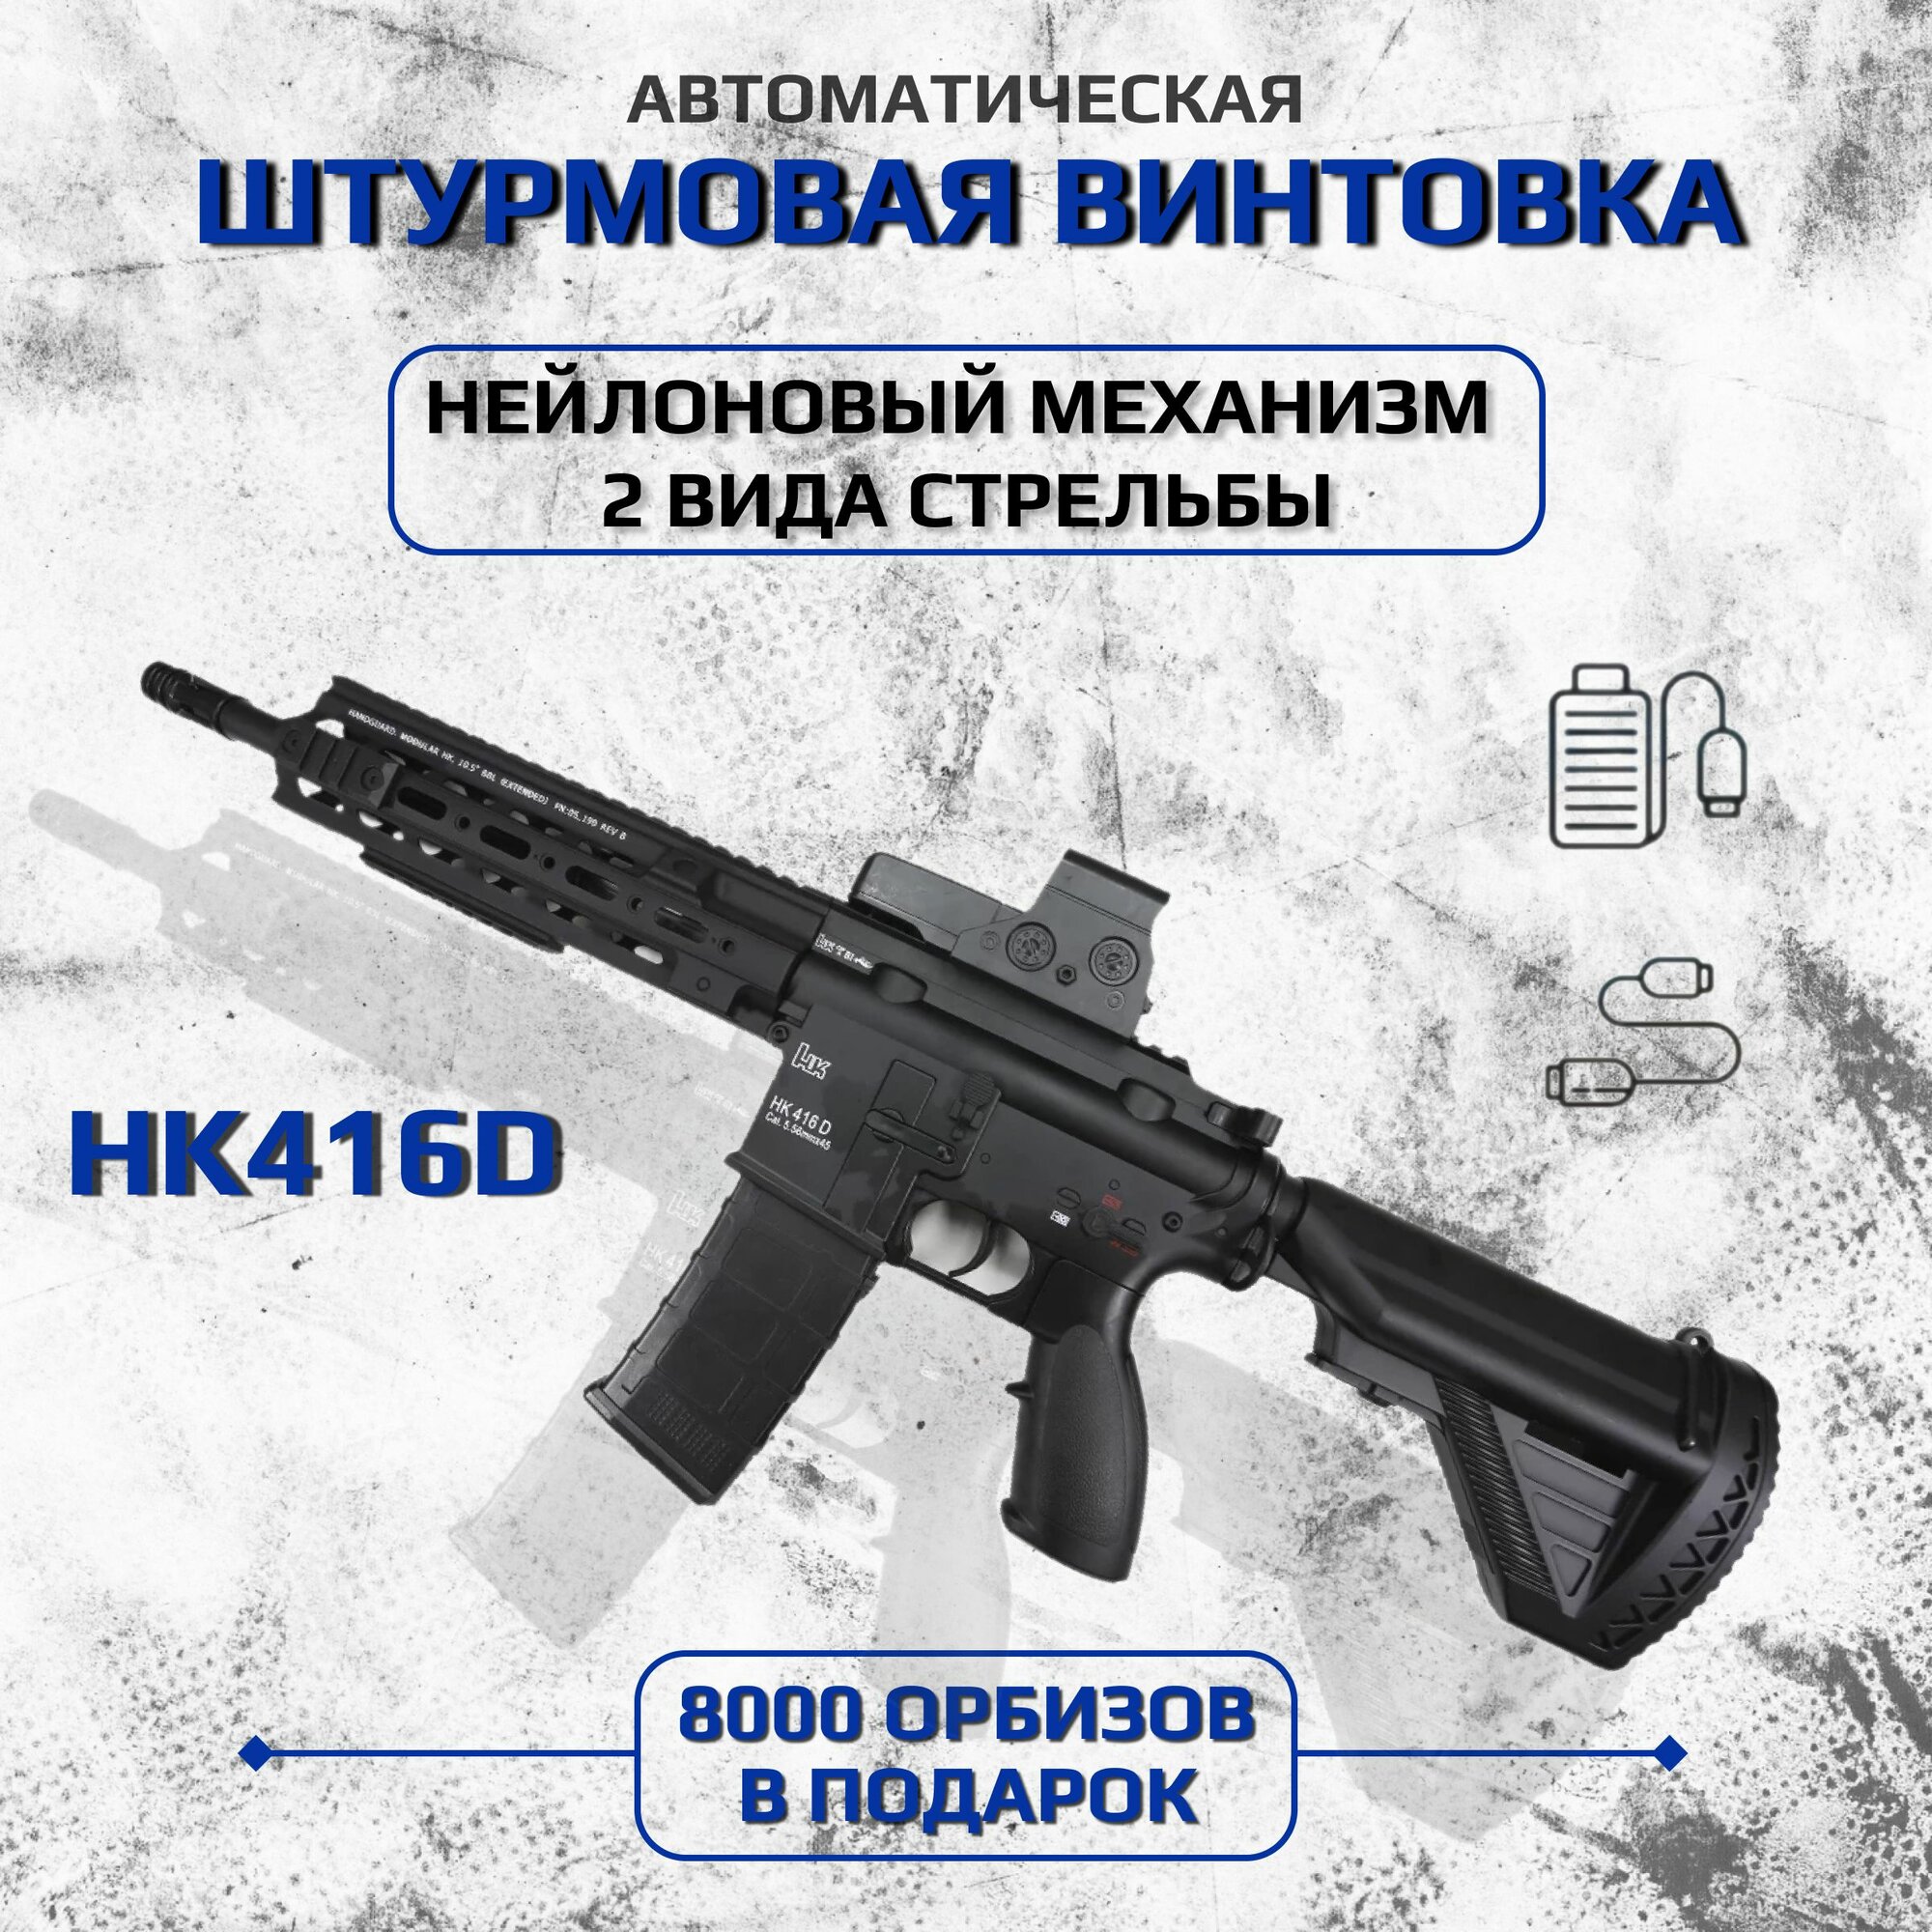 Автомат Орбибольный "Штурмовая Винтовка HK416D" чёрный, Электрический, игрушечный, стреляет Орбизами